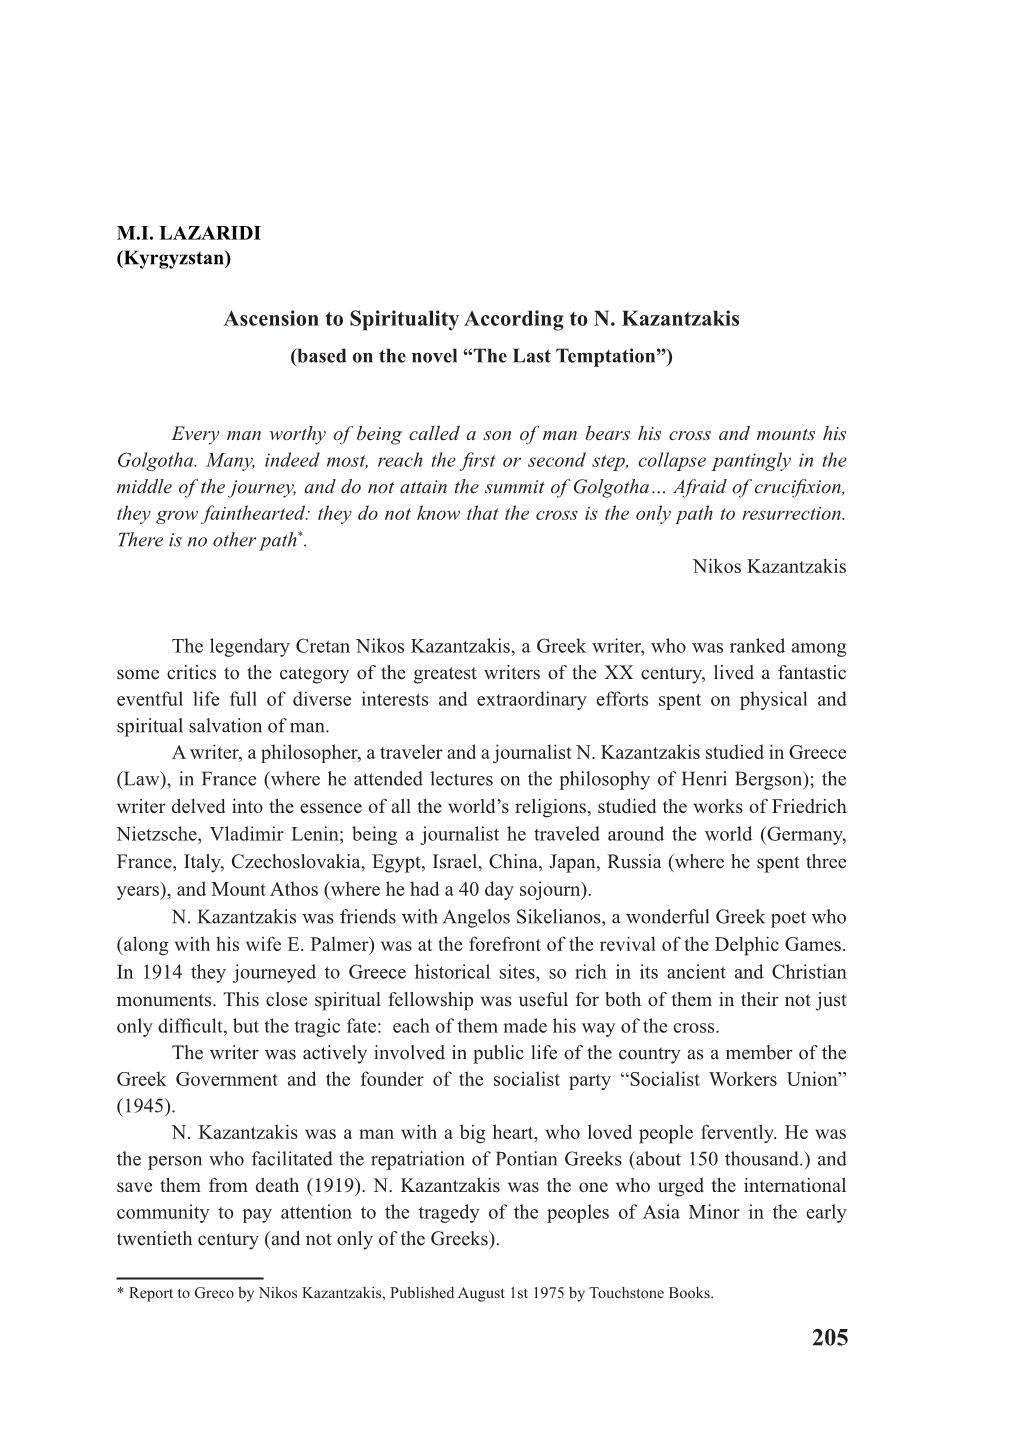 Ascension to Spirituality According to N. Kazantzakis (Based on the Novel “The Last Temptation”)